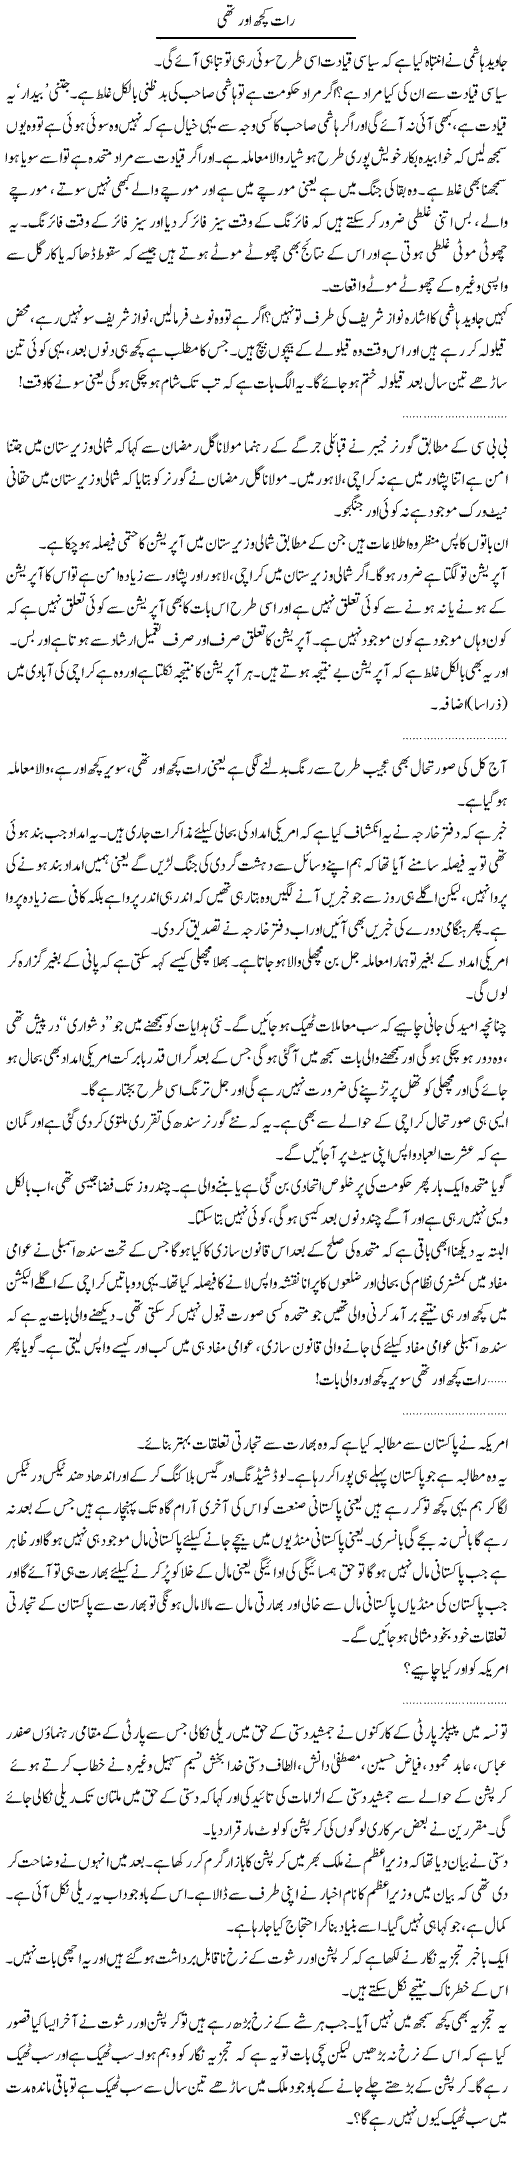 Warning to Nawaz Sharif Express Column Abdullah Tariq 19 July 2011